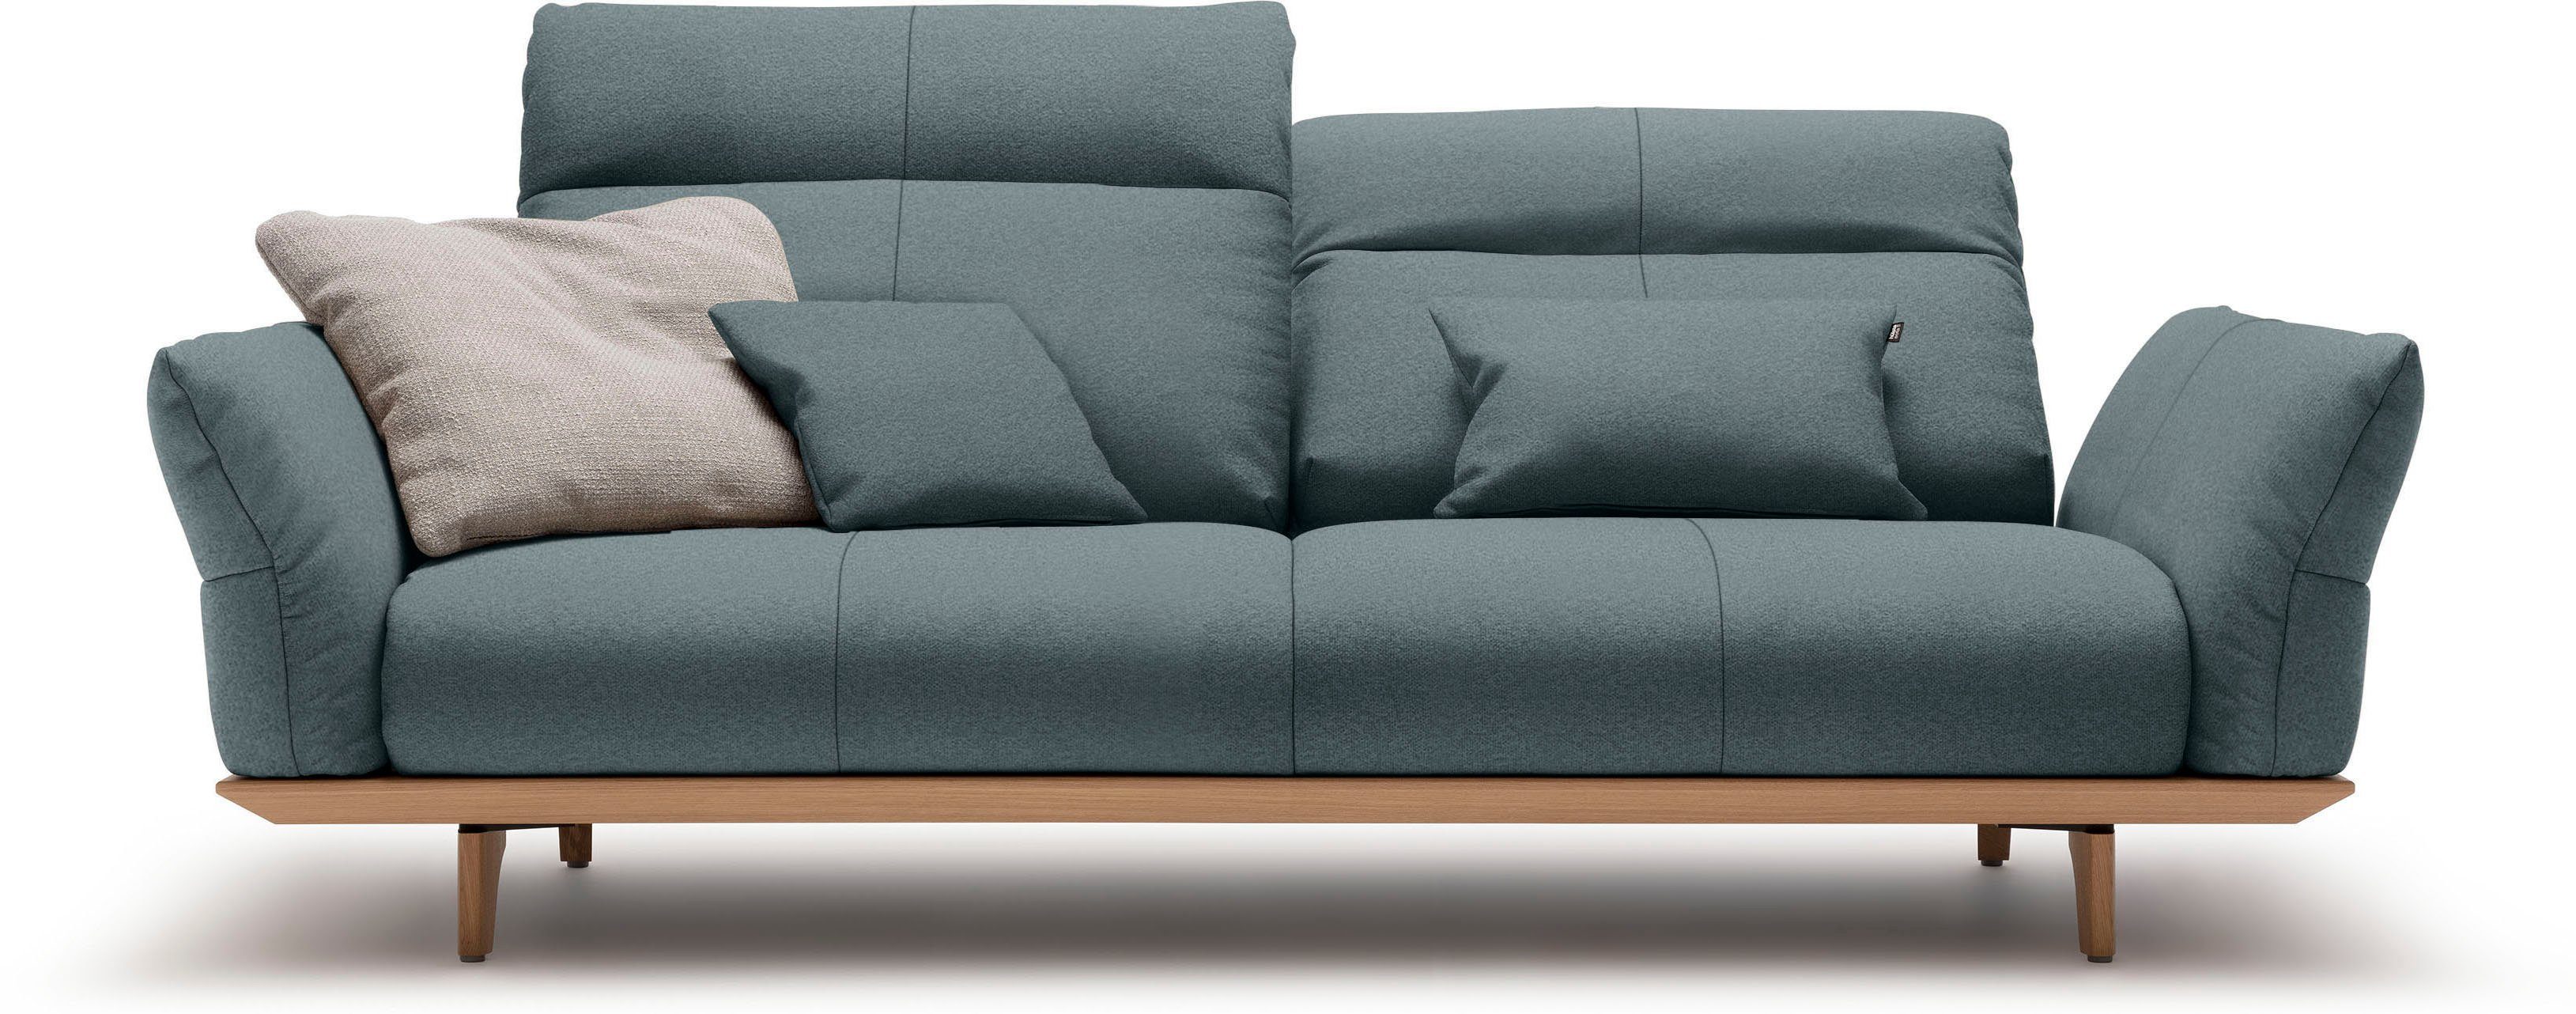 huelsta sofa 3-zitsbank hs.460 onderstel in eiken, poten in natuurlijk eiken, breedte 208 cm blauw